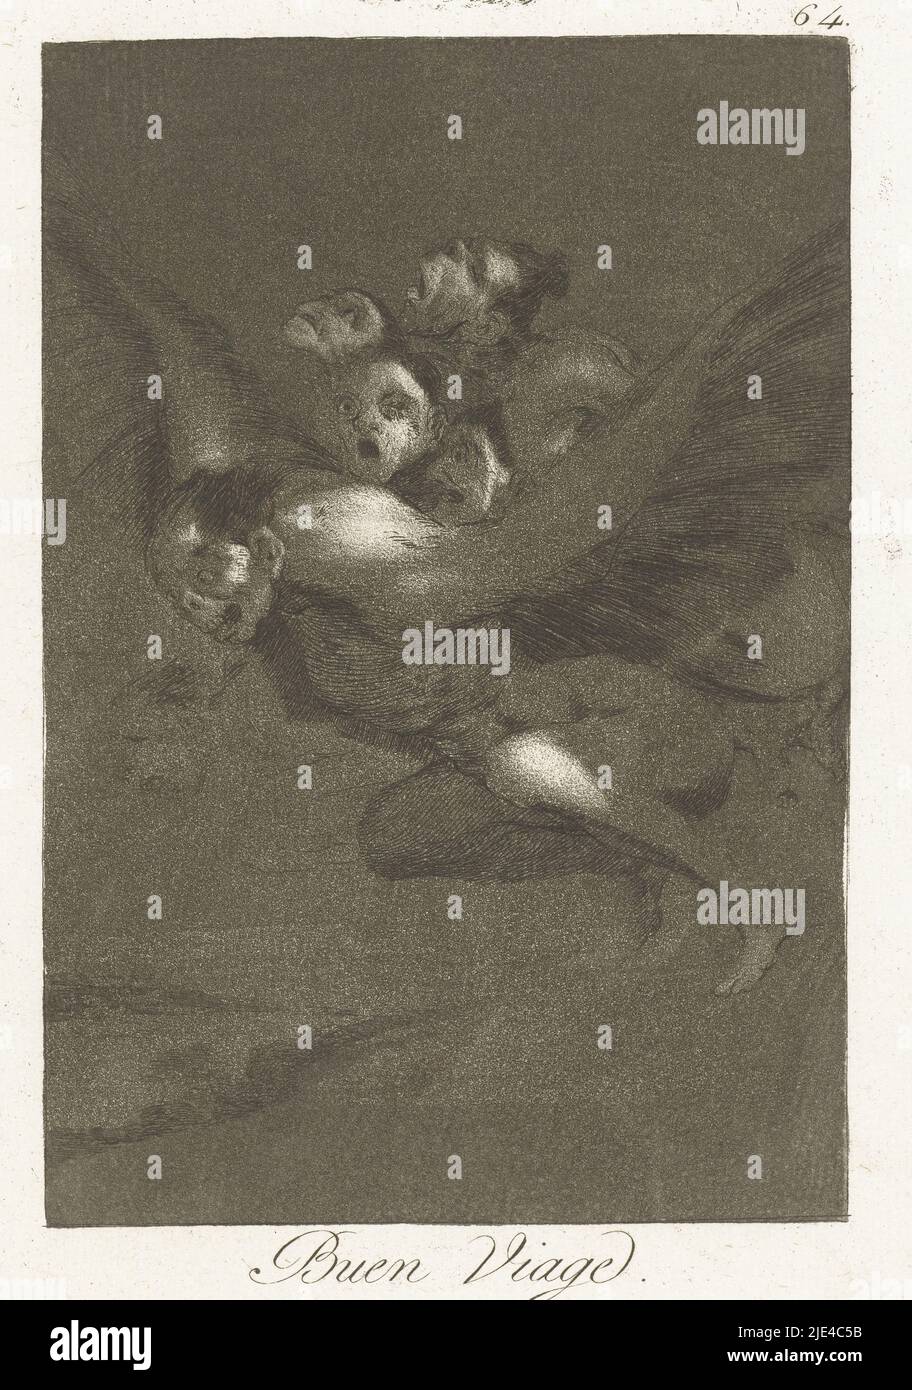 Good Journey, Francisco de Goya, 1797 - 1799, un diavolo con diversi diavoli sulla schiena, vola per tutta la notte. Sessantaquattresima stampa della serie Los Caprichos, tipografia: Francisco de Goya, Francisco de Goya, Spagna, 1797 - 1799, carta, incisione, h 215 mm x l 151 mm Foto Stock